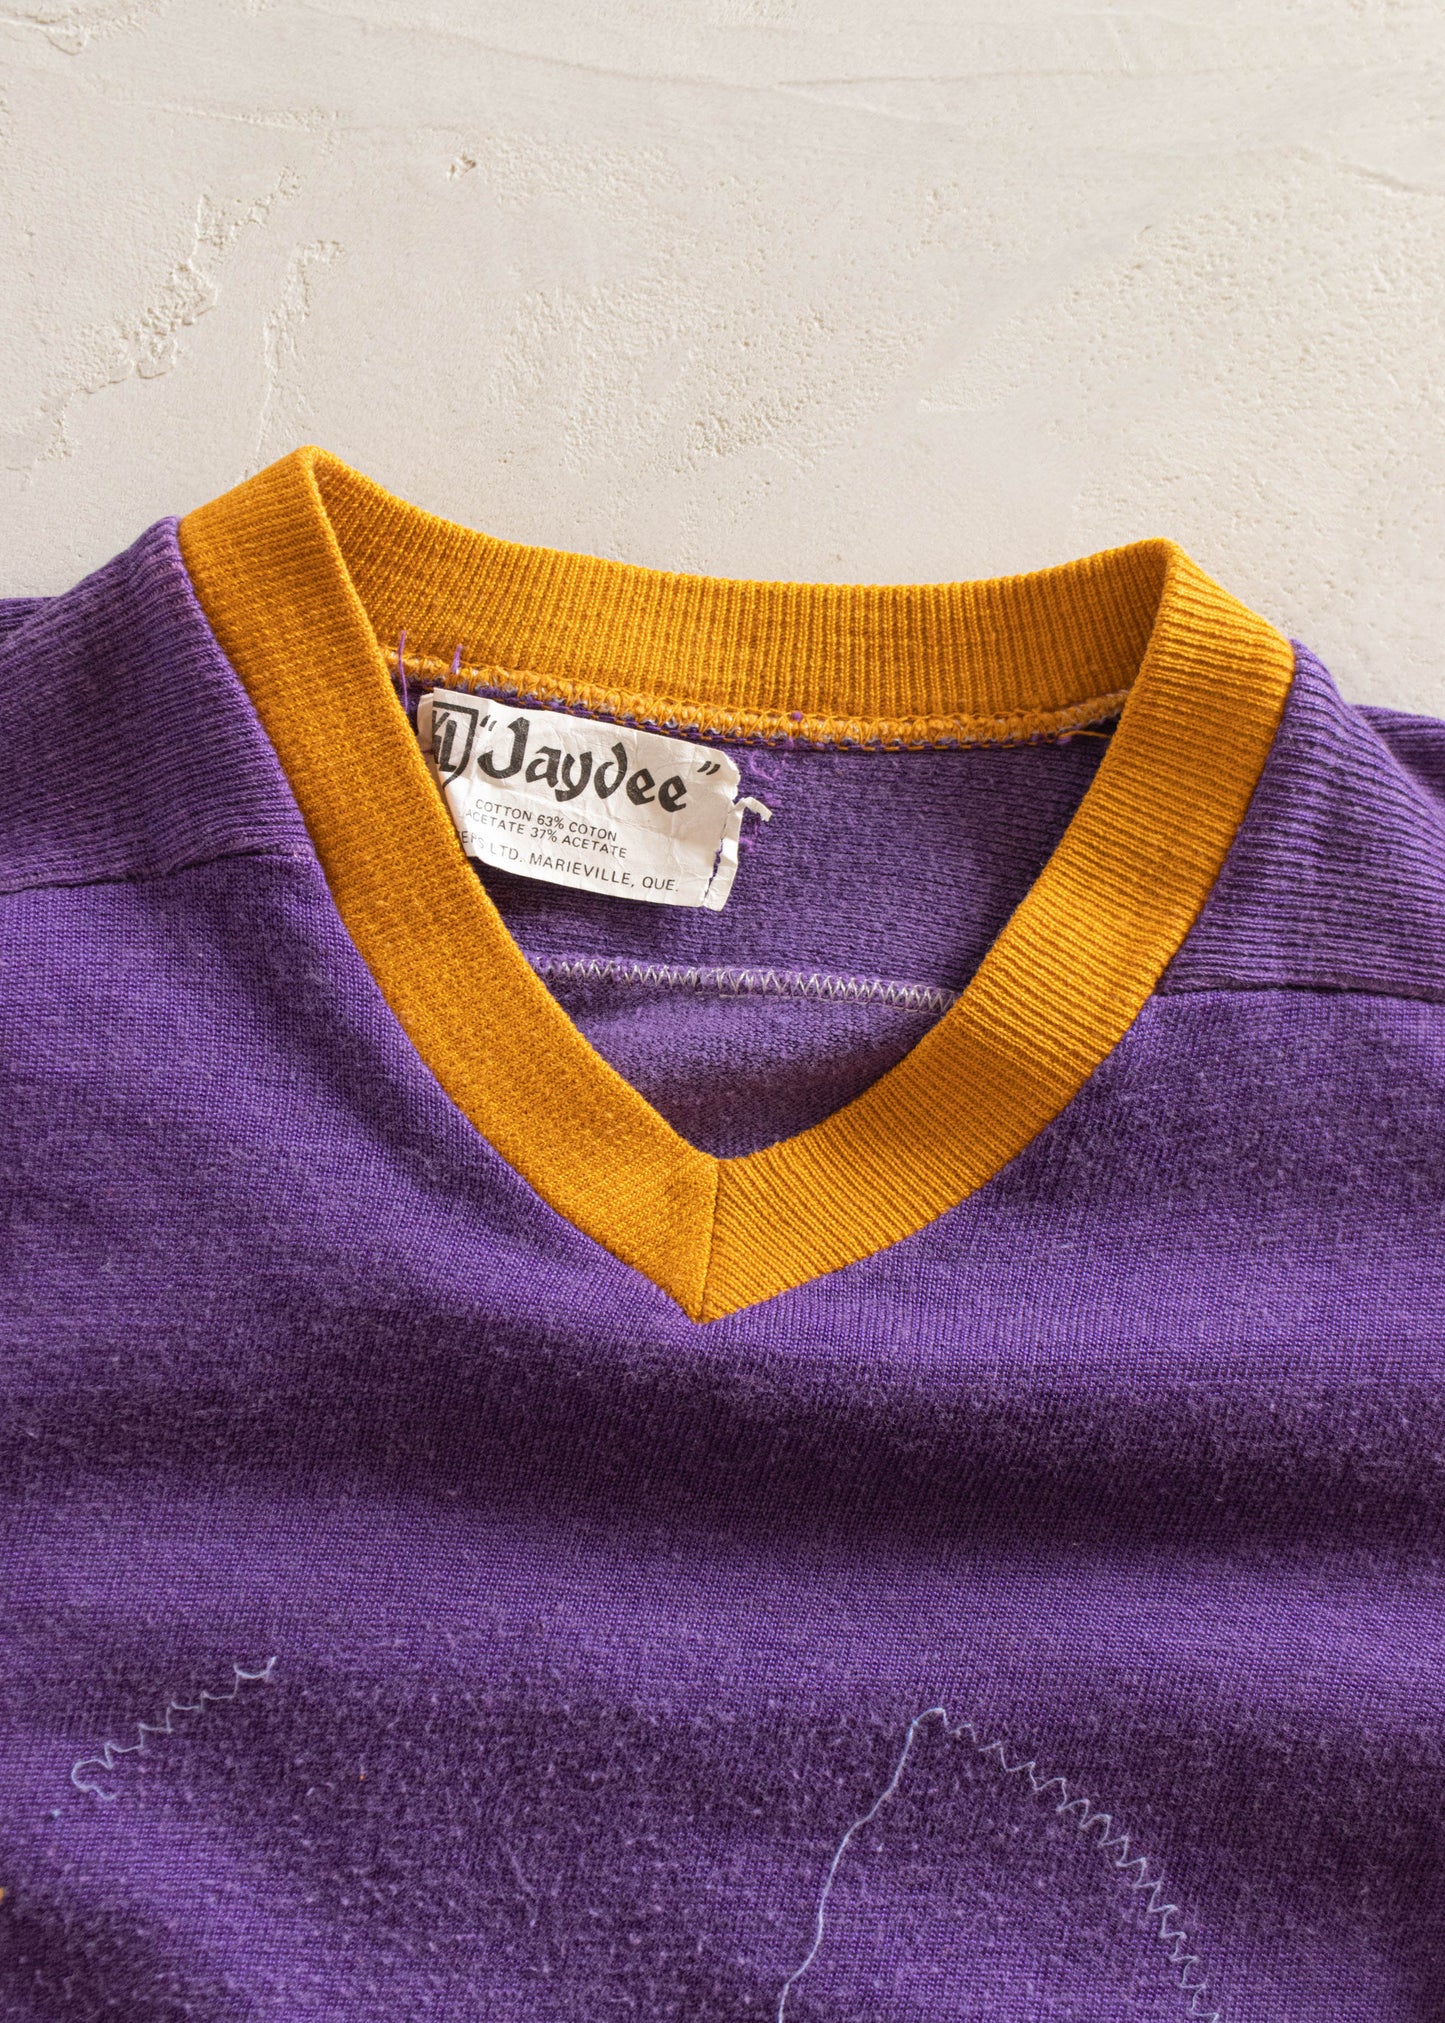 1980s Jaydee Knitters Ltd 3/4 Sleeve Sport Jersey Size XS/S